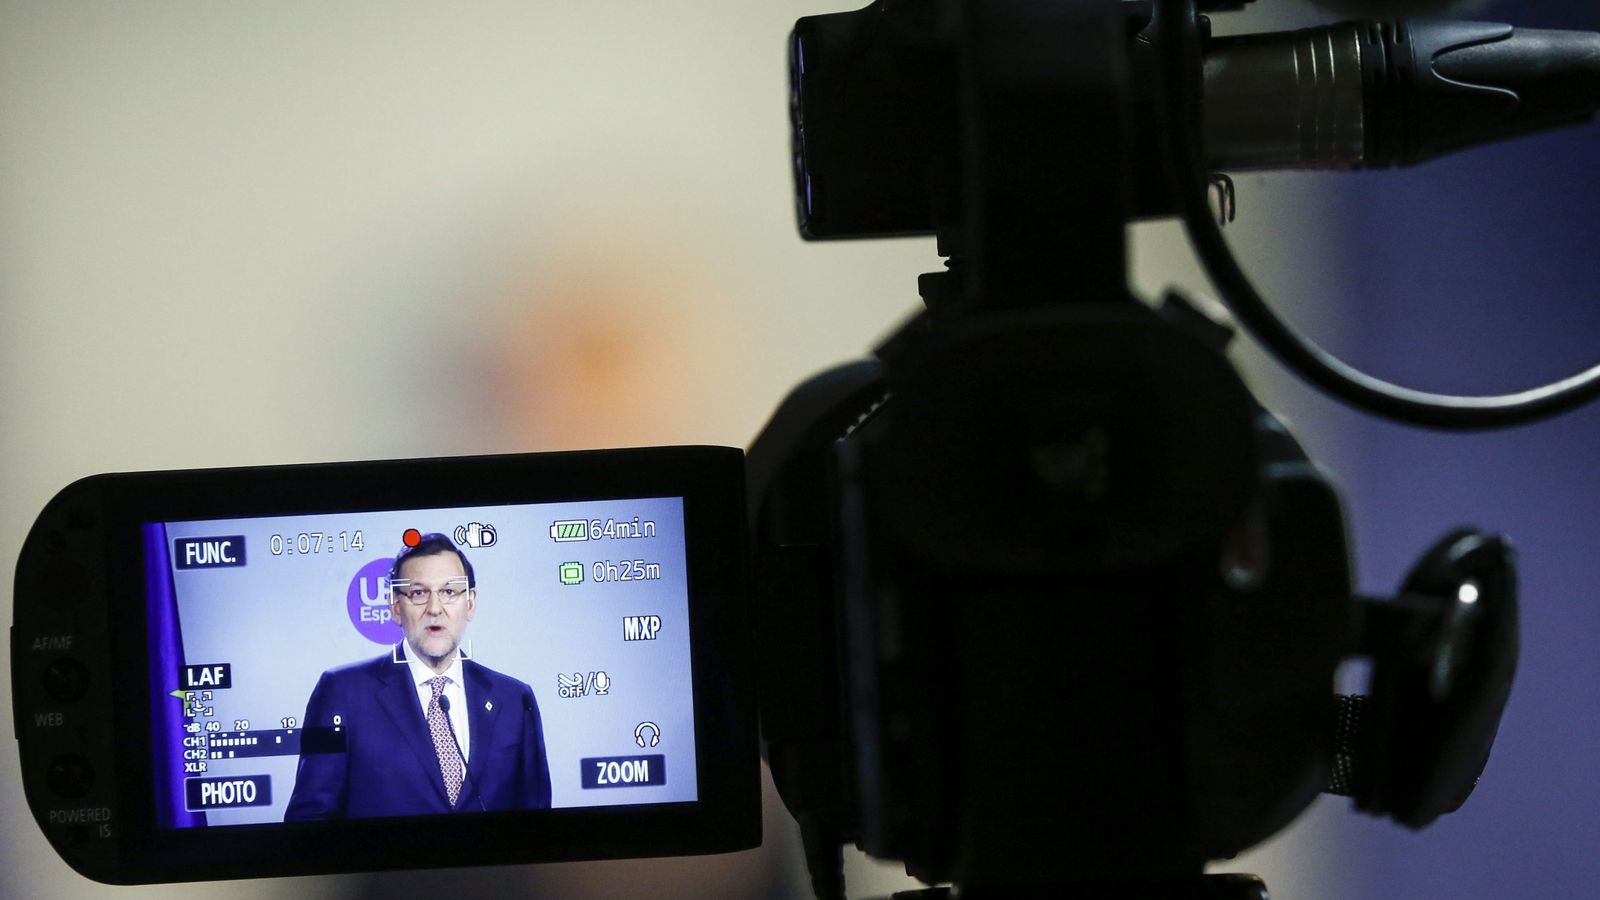 Foto: El monitor de una cámara muestra al presidente del Gobierno español, Mariano Rajoy. (EFE)